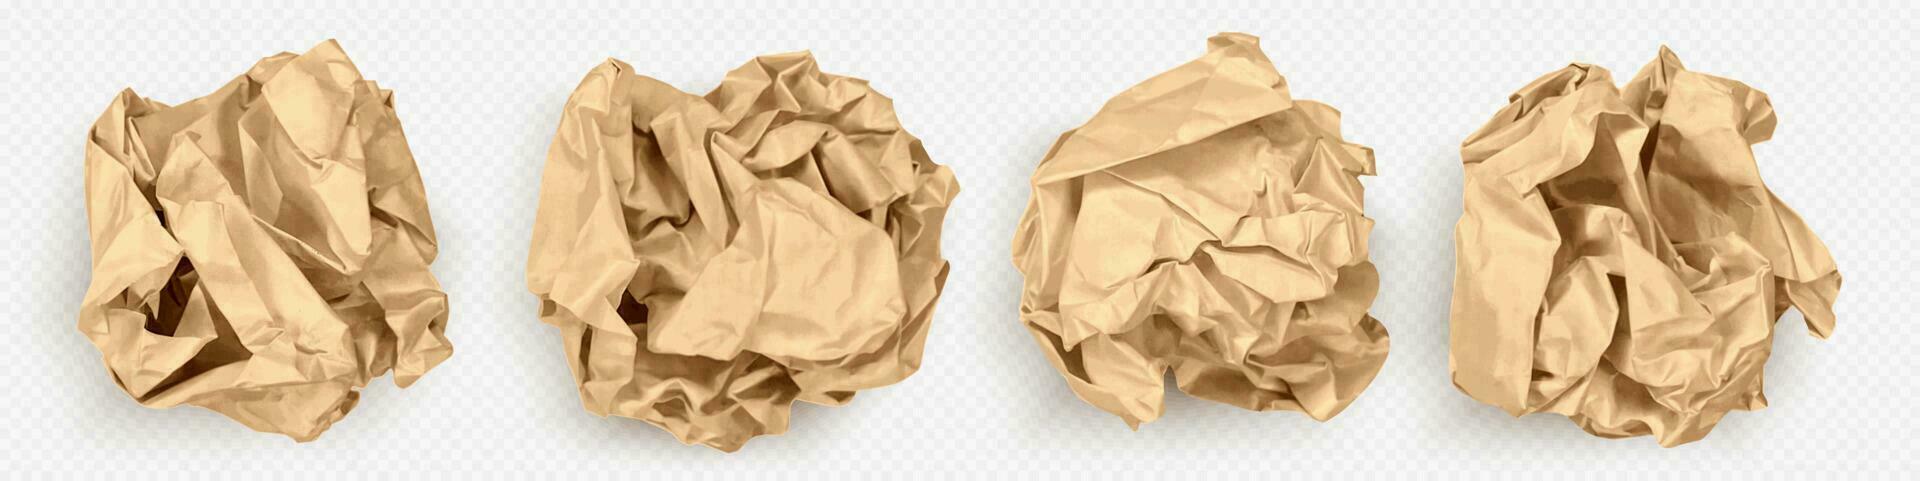 realistisch 3d reeks van verfrommeld papier ballen vector